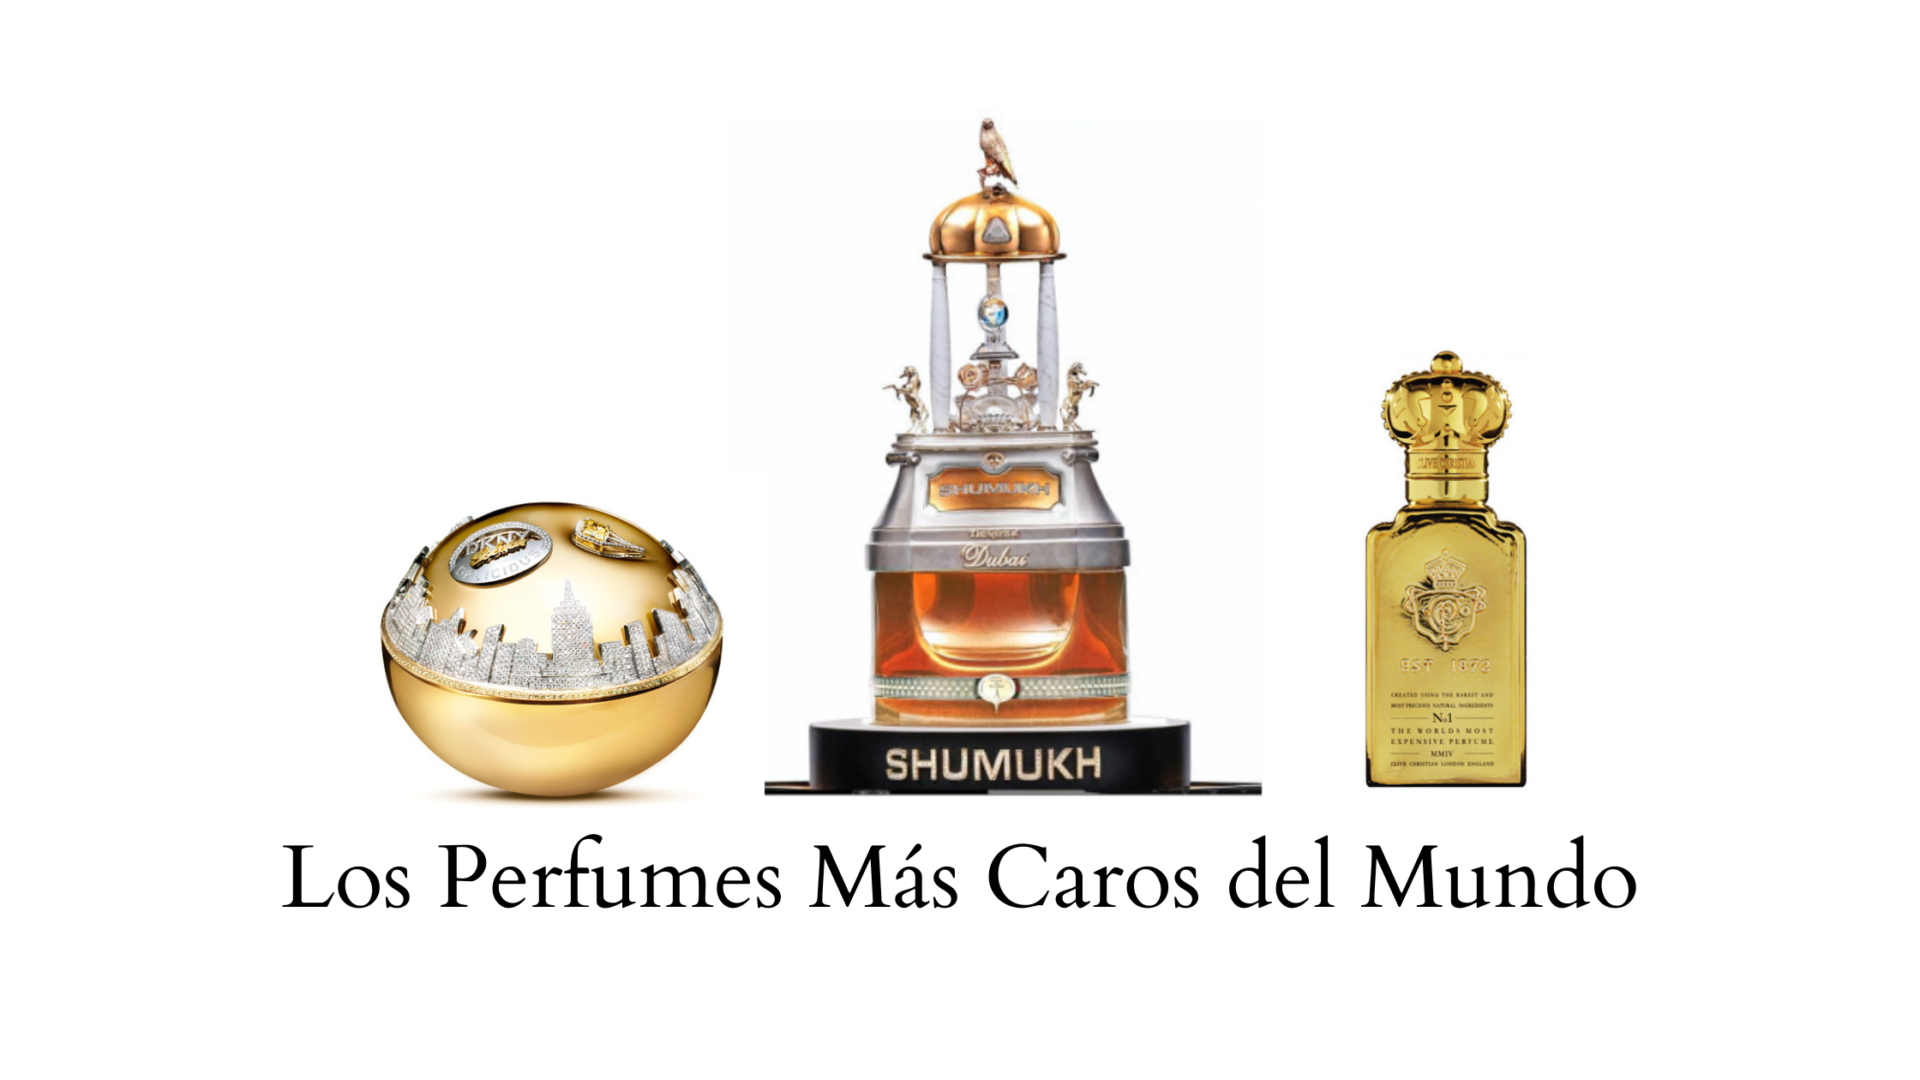 Los Perfumes Más Caros del Mundo